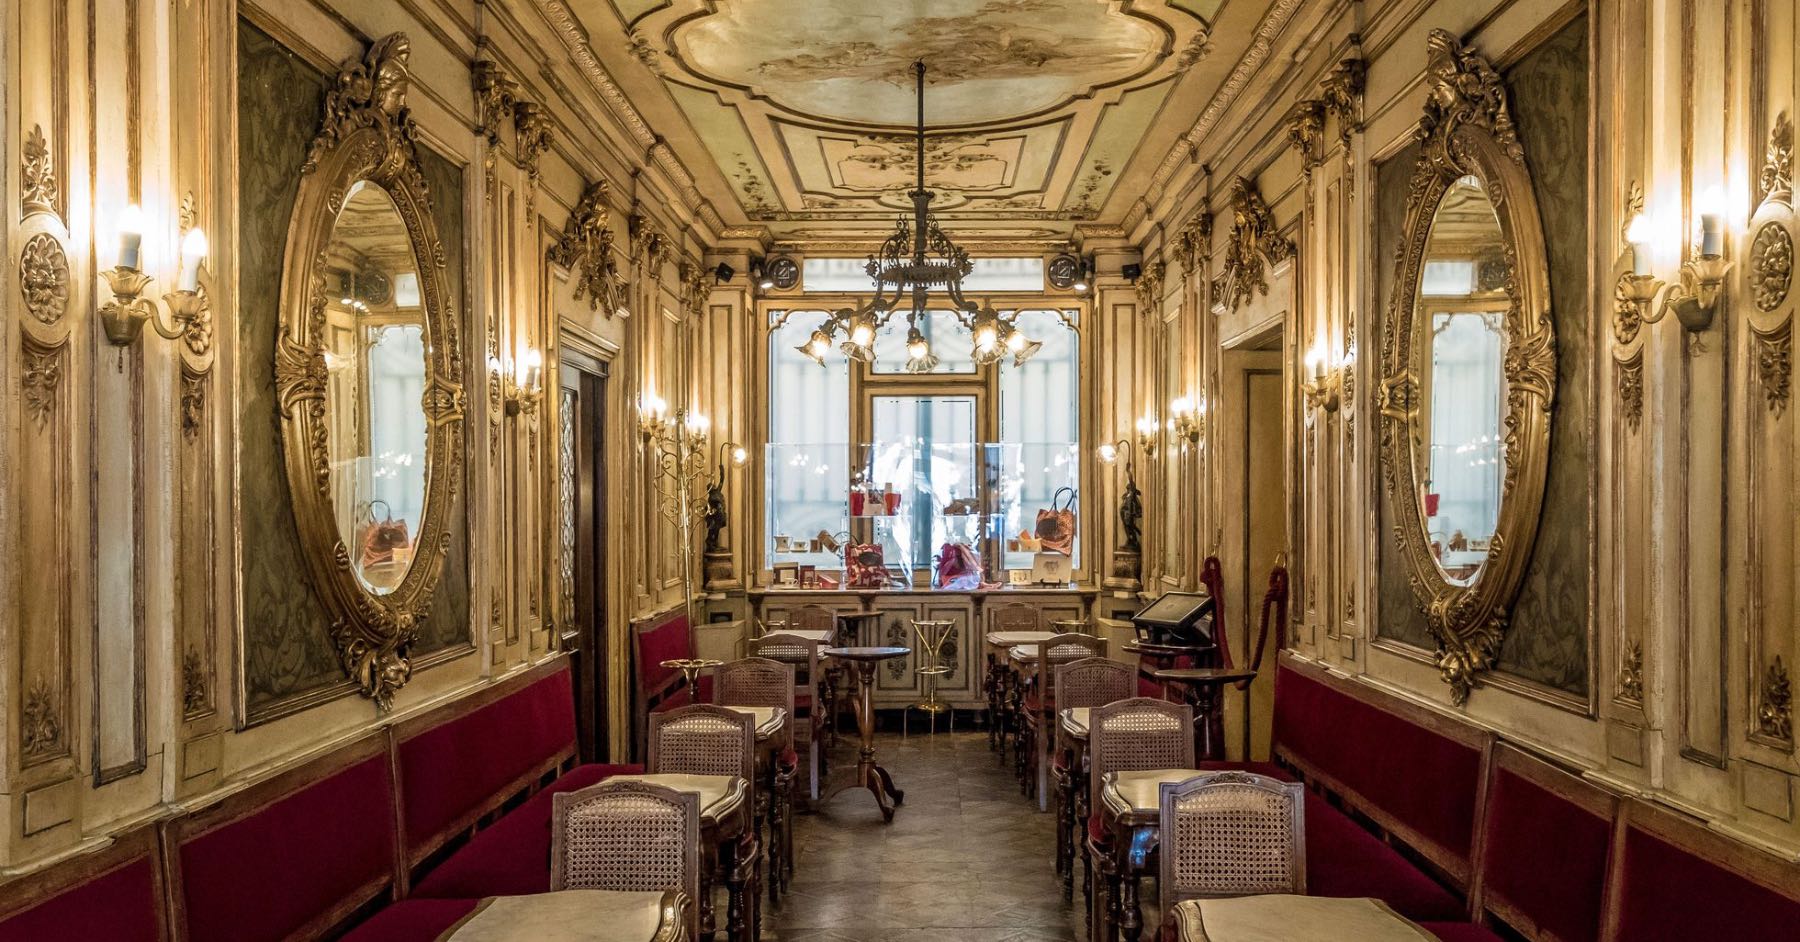 Caffè Florian - ვენეციის უძველესი კაფე მდიდარი ისტორიით